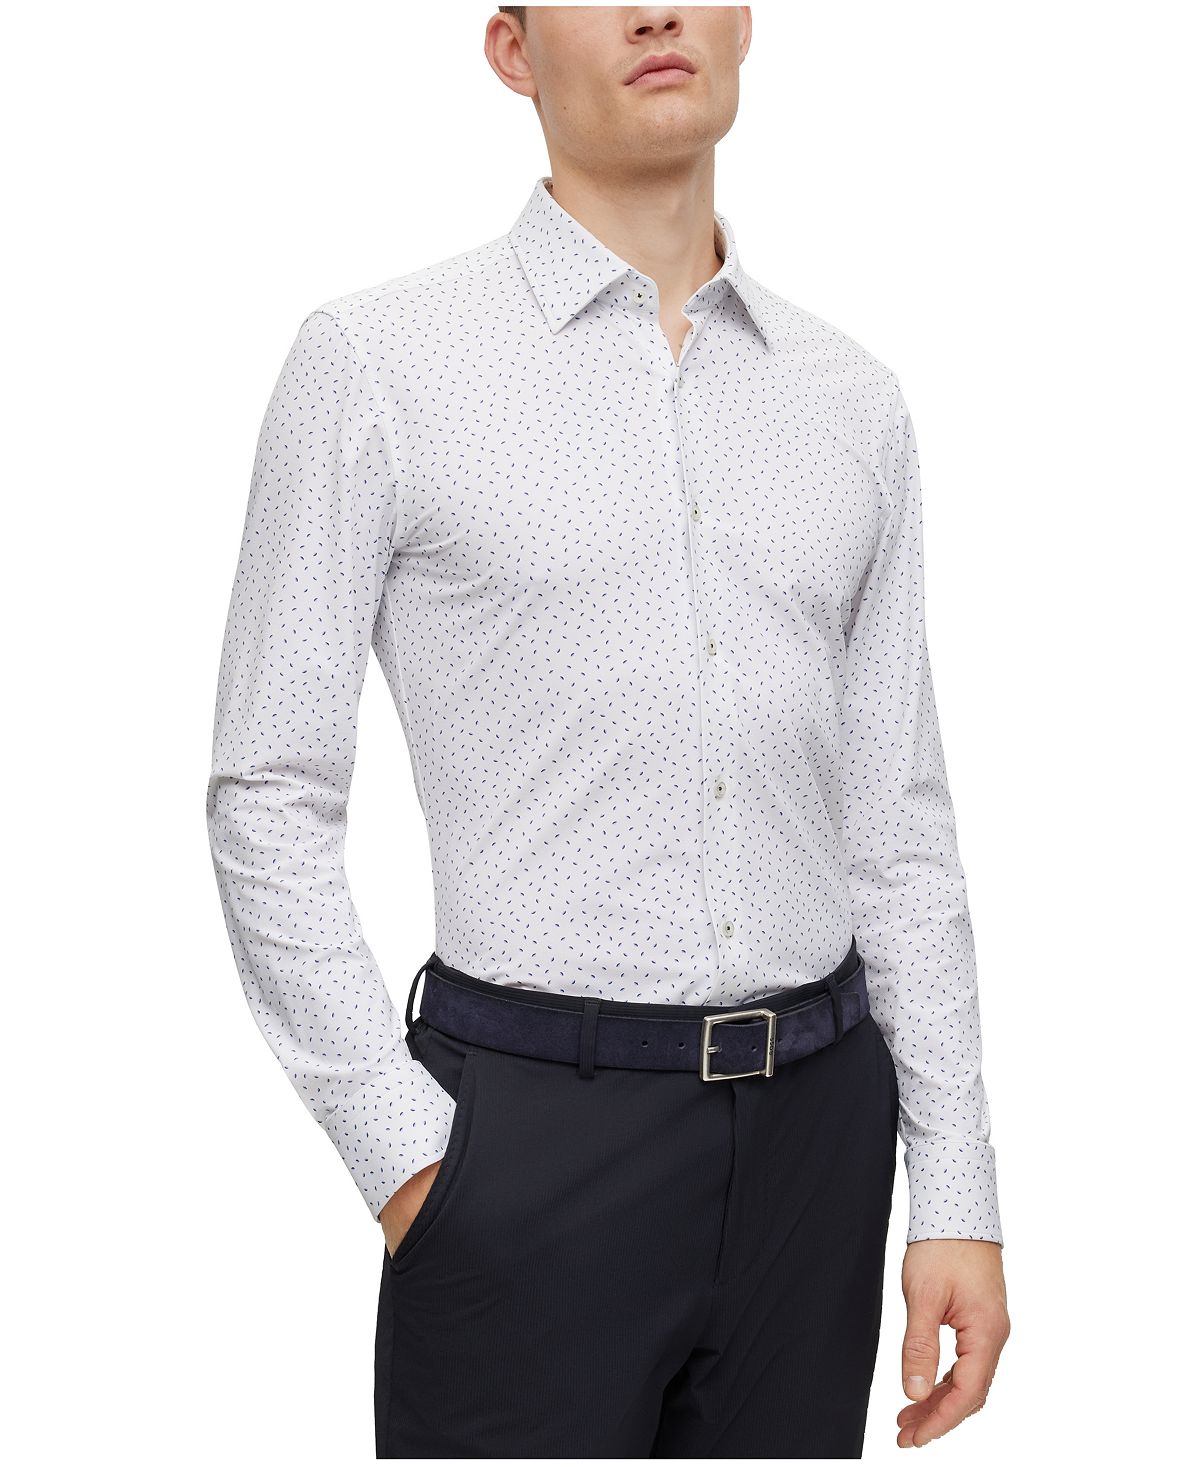 Мужская рубашка узкого кроя Performance Hugo Boss мужской костюм жилет в полоску двубортная деловая куртка без рукавов повседневная облегающая универсальная мужская рубашка